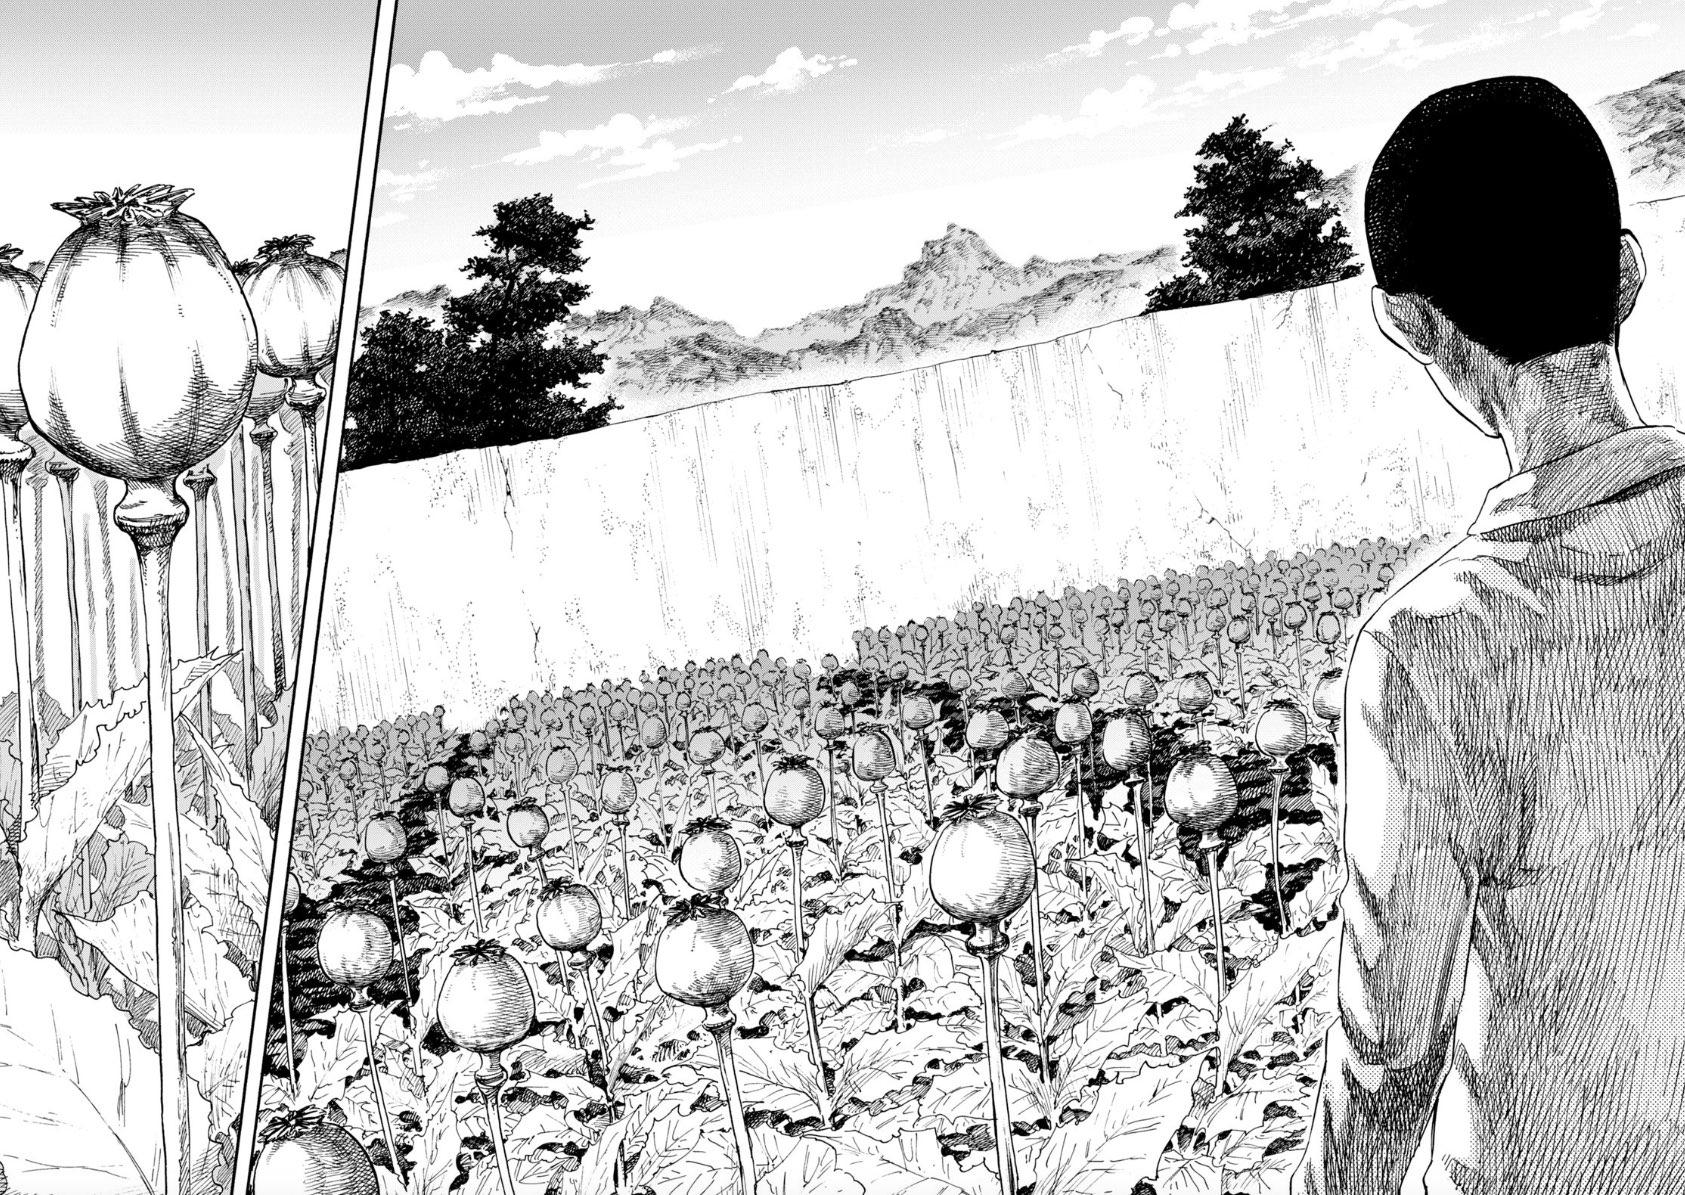 裏社会漫画『満州アヘンスクワッド』の正直レビュー【あらすじ・感想】 | Emo Stone